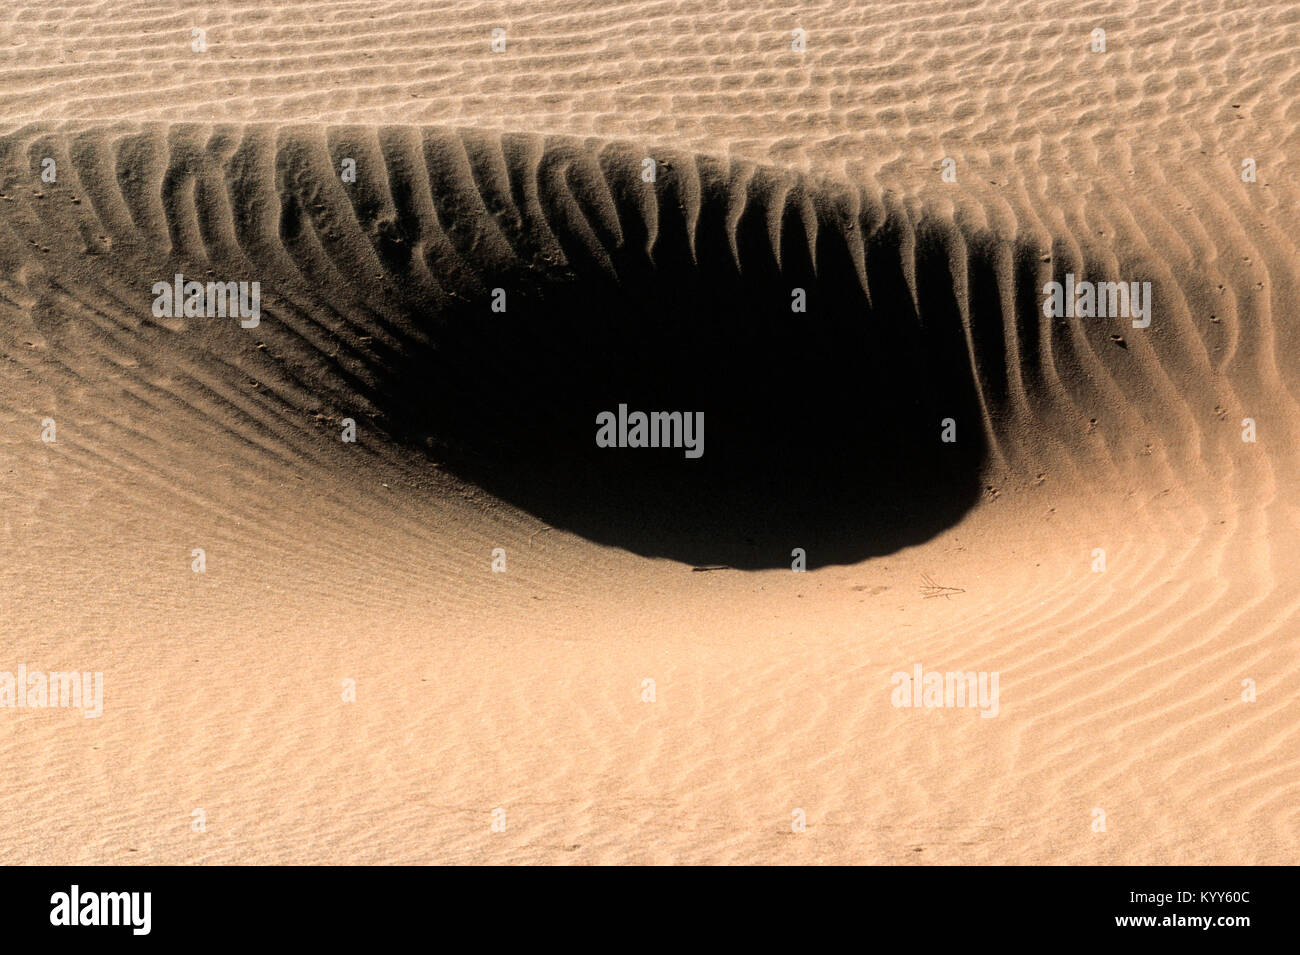 Structures de sable, Sossusvlei, Namib-Naukluft National Park, Désert du Namib, Namibie | Strukturen im Sand, Sossusvlei, Namib-Naukluft Nationalpark Banque D'Images